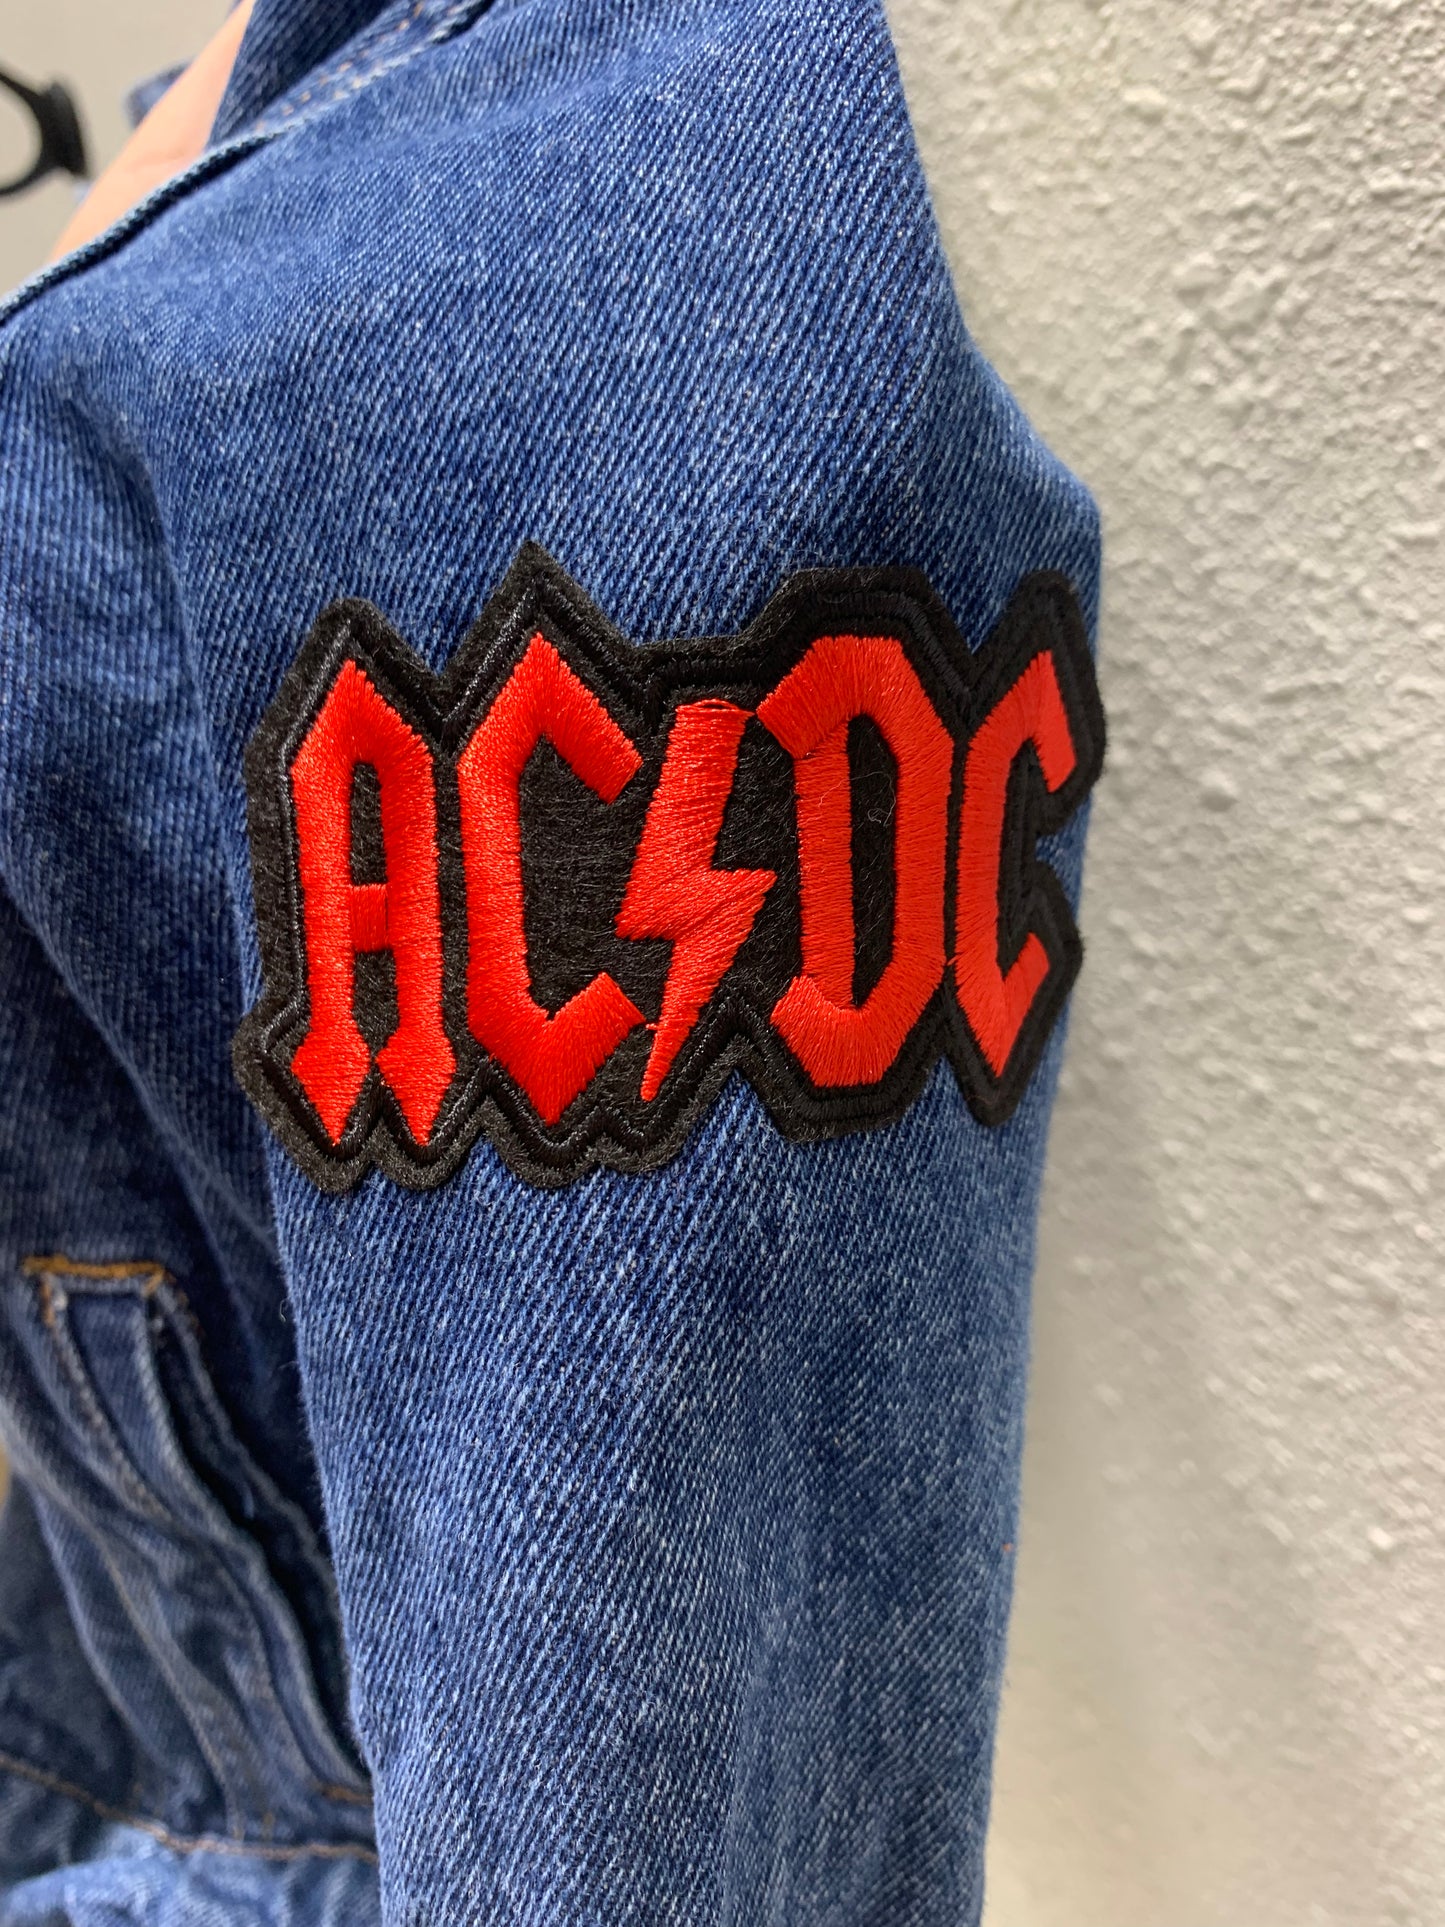 Vintage Repurposed AC/DC Toddler Jacket